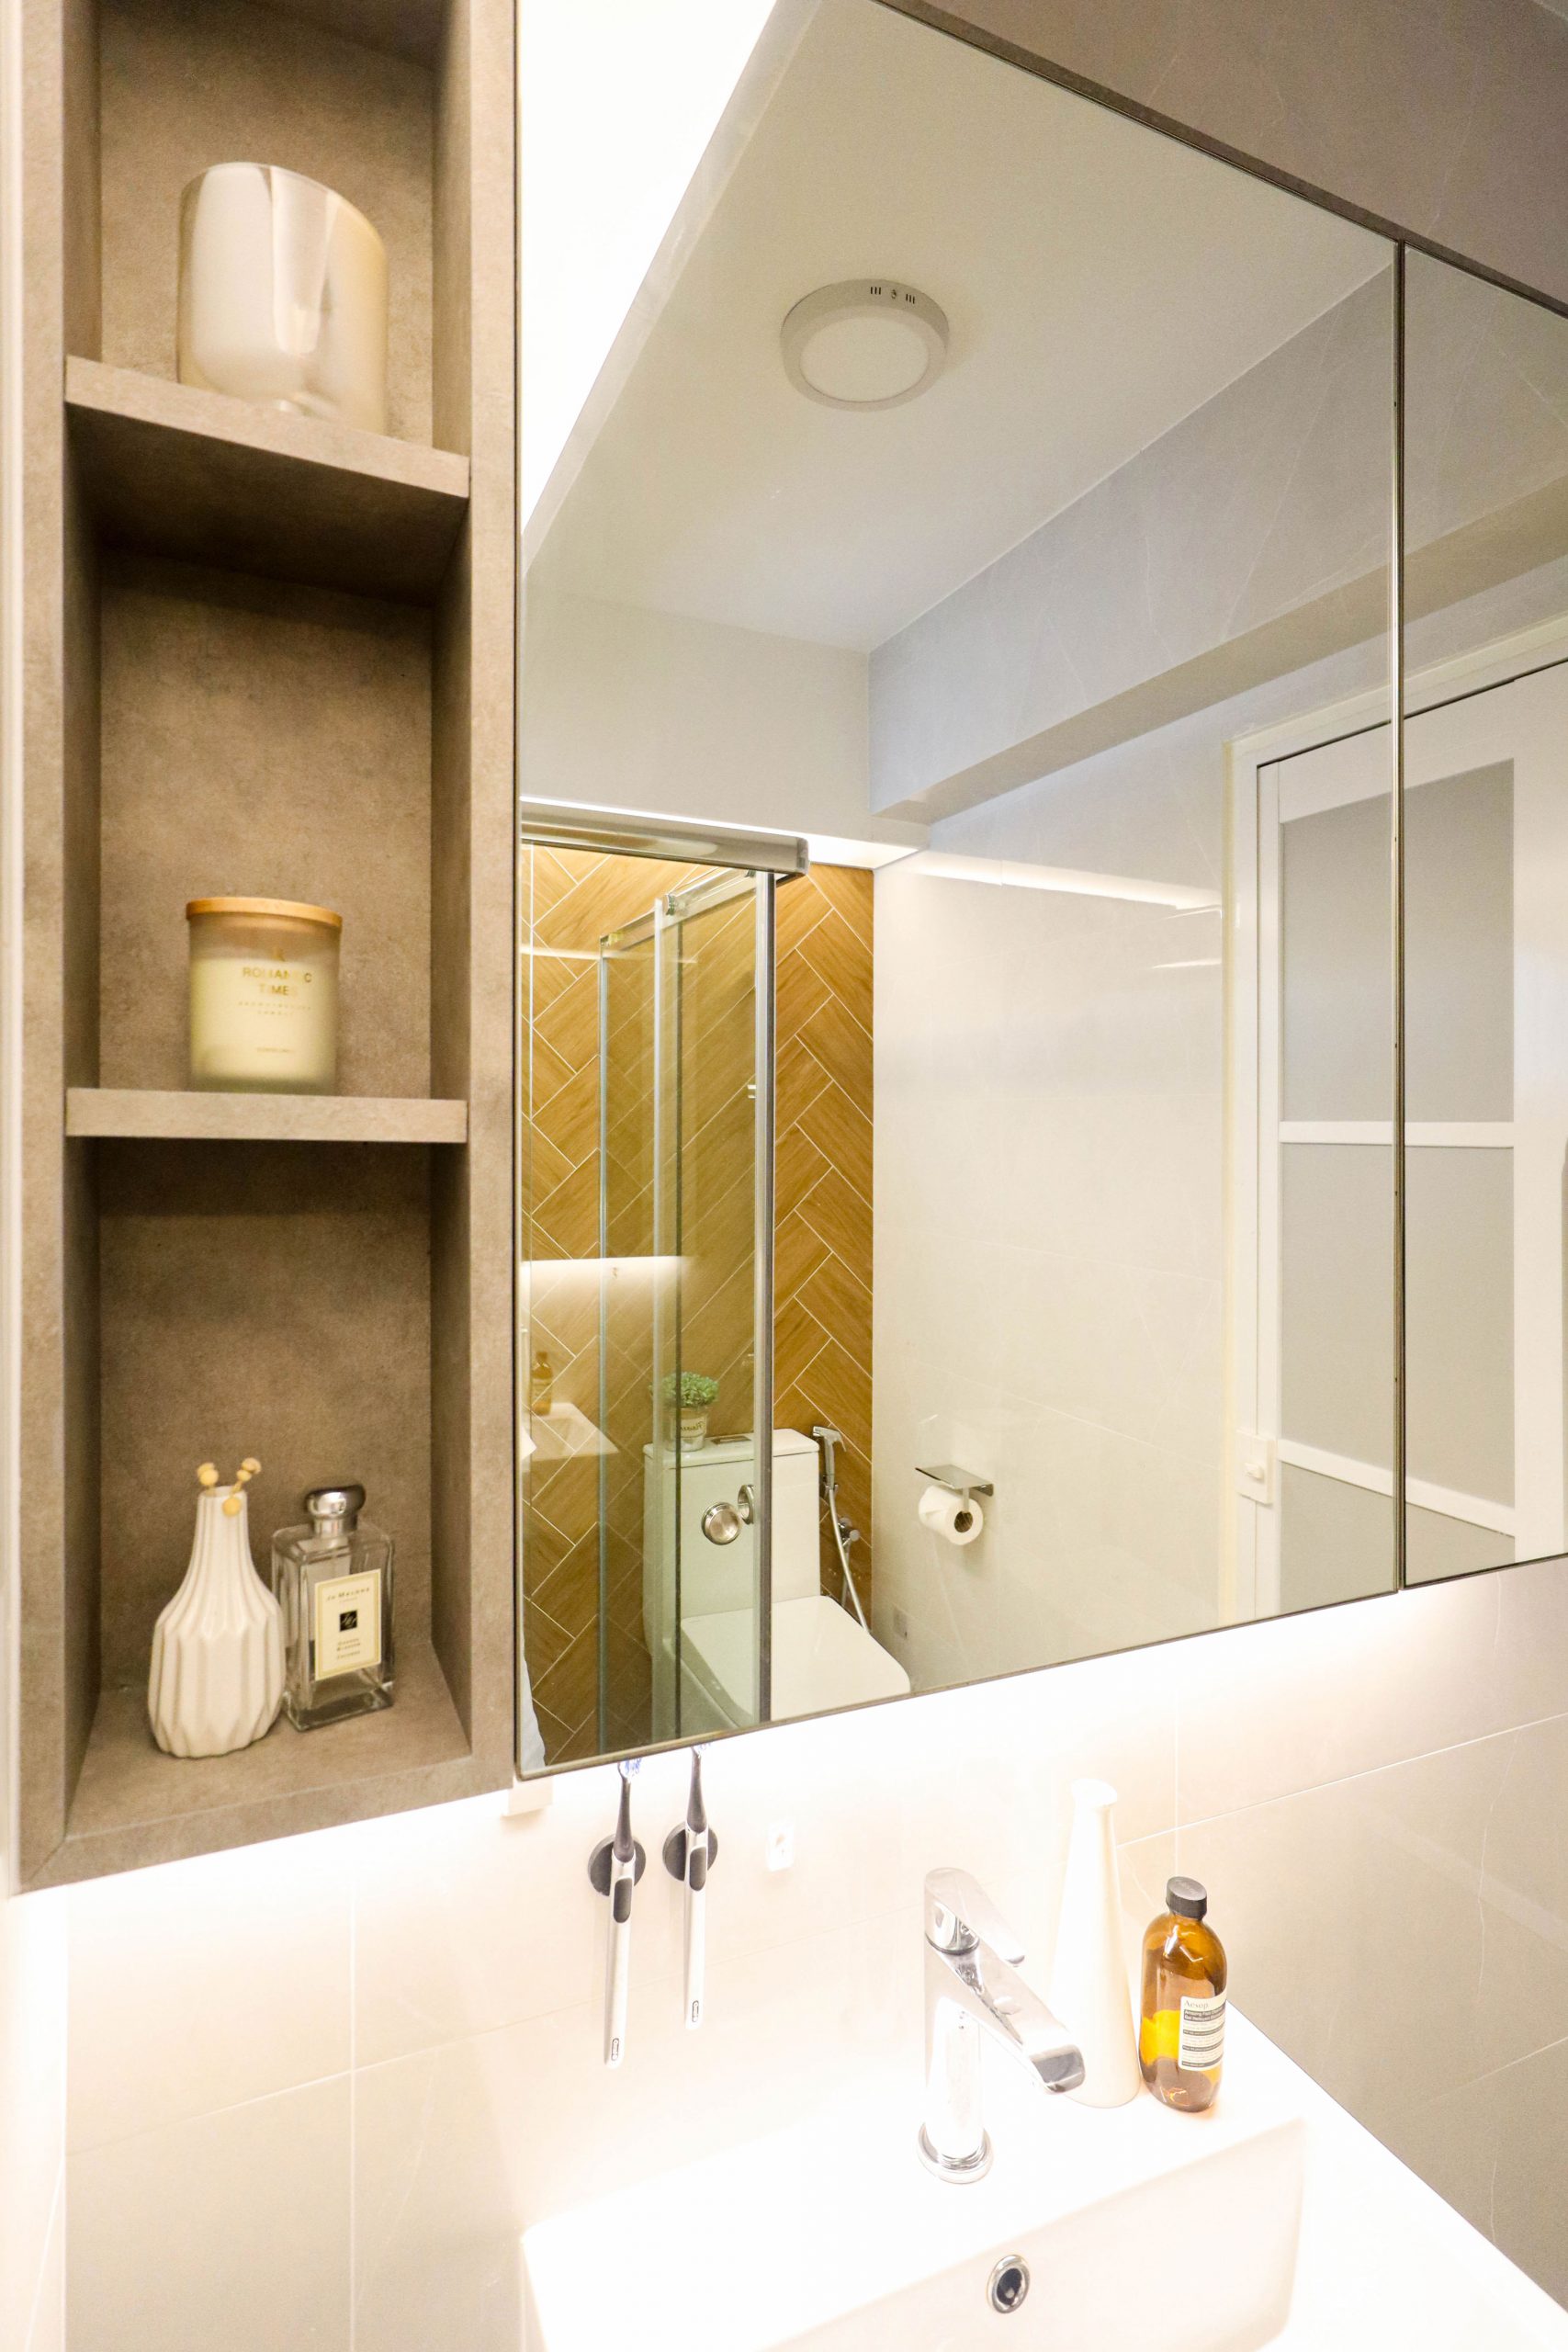 4 room HDB resale bathroom renovation muji style wood tile bathroom vanity